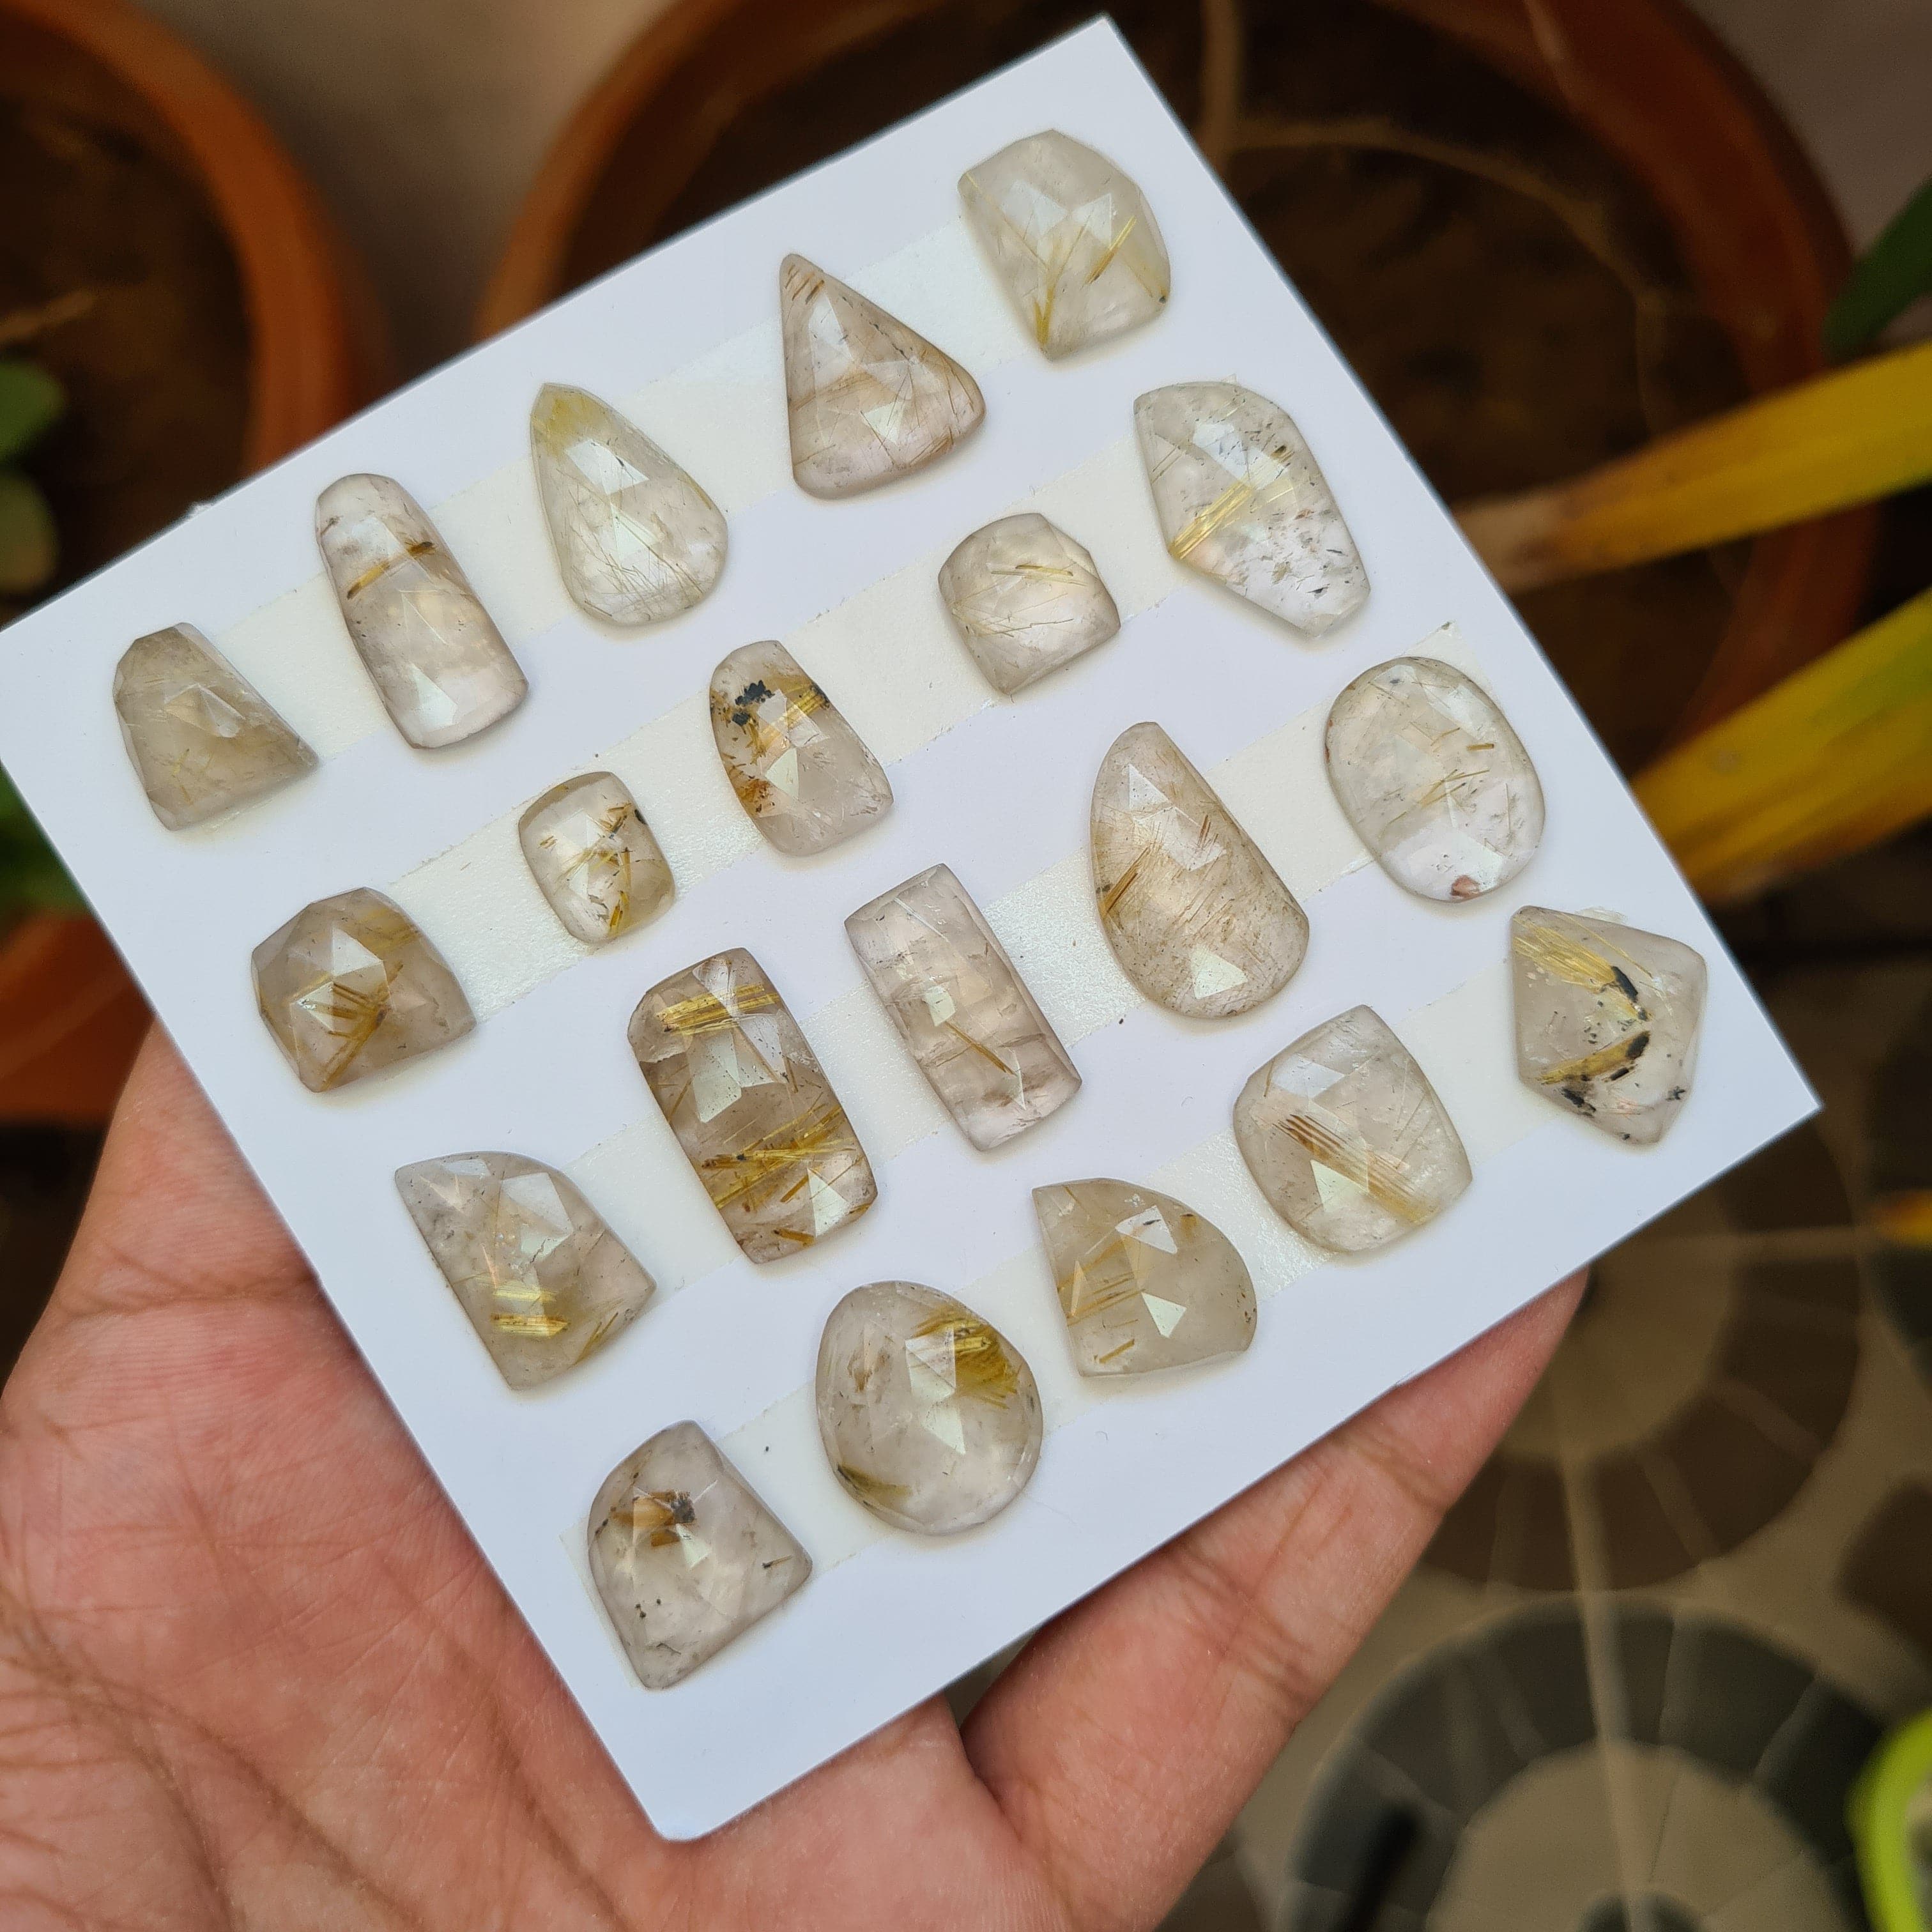 20 Pcs Natural Rutile Quartz Faceted Gemstones | Fancy Shape, Sizes: 11-21mm - The LabradoriteKing